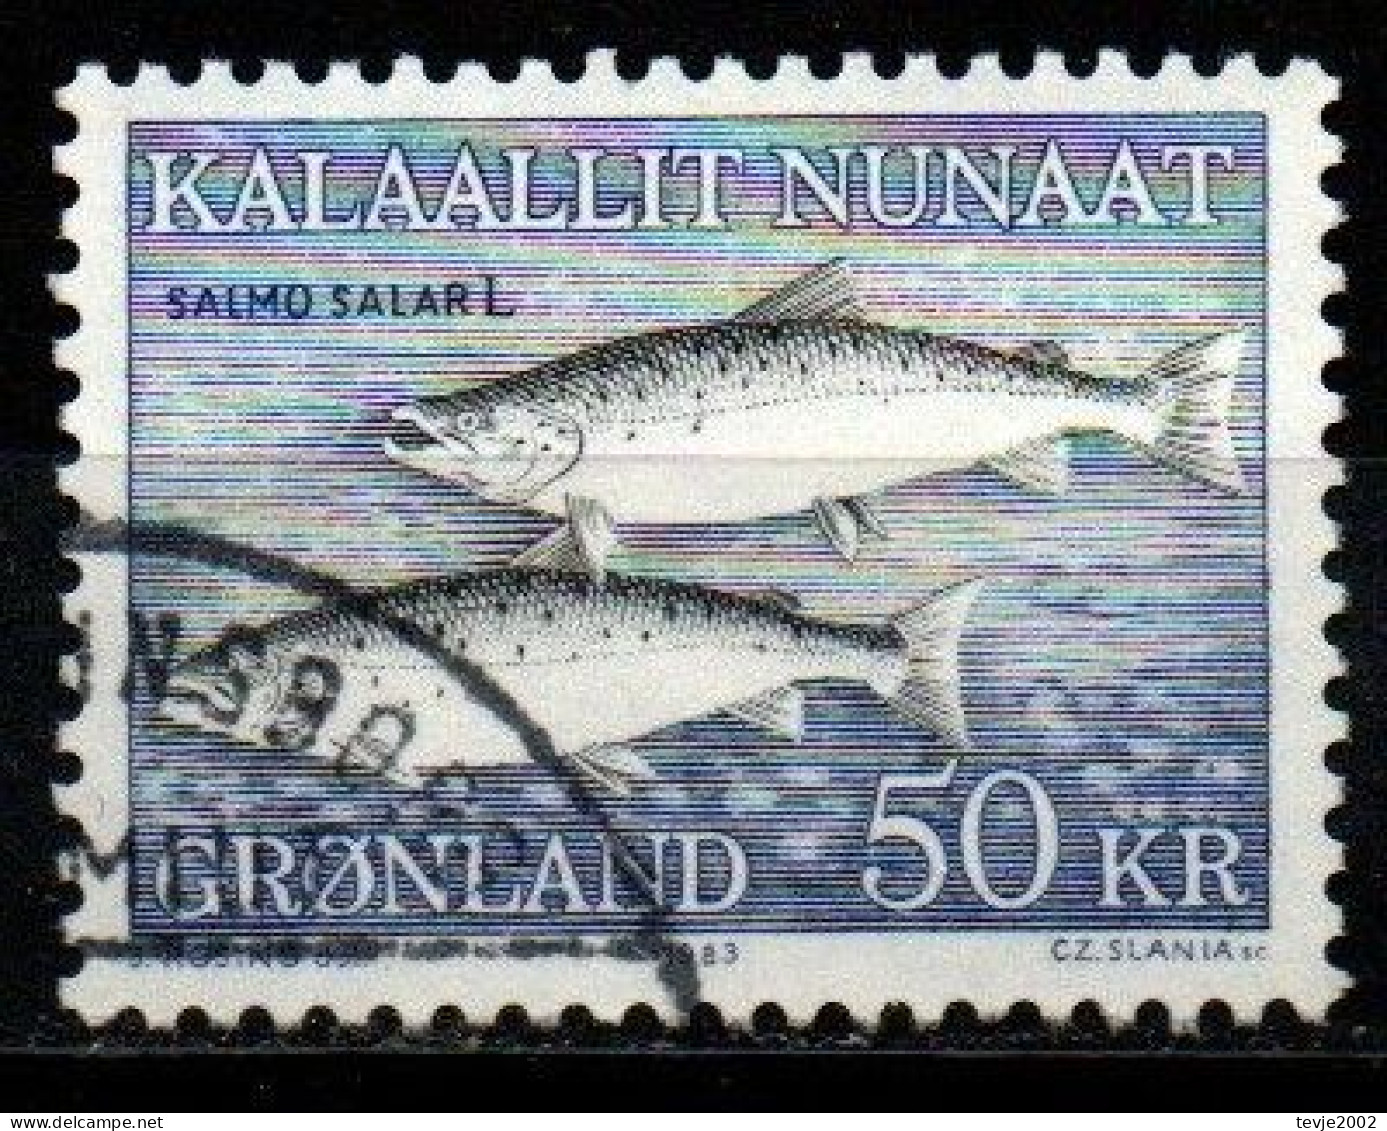 Grönland 1983 - Mi.Nr. 140 - Gestempelt Used - Tiere Animals Fische Fishes - Gebruikt